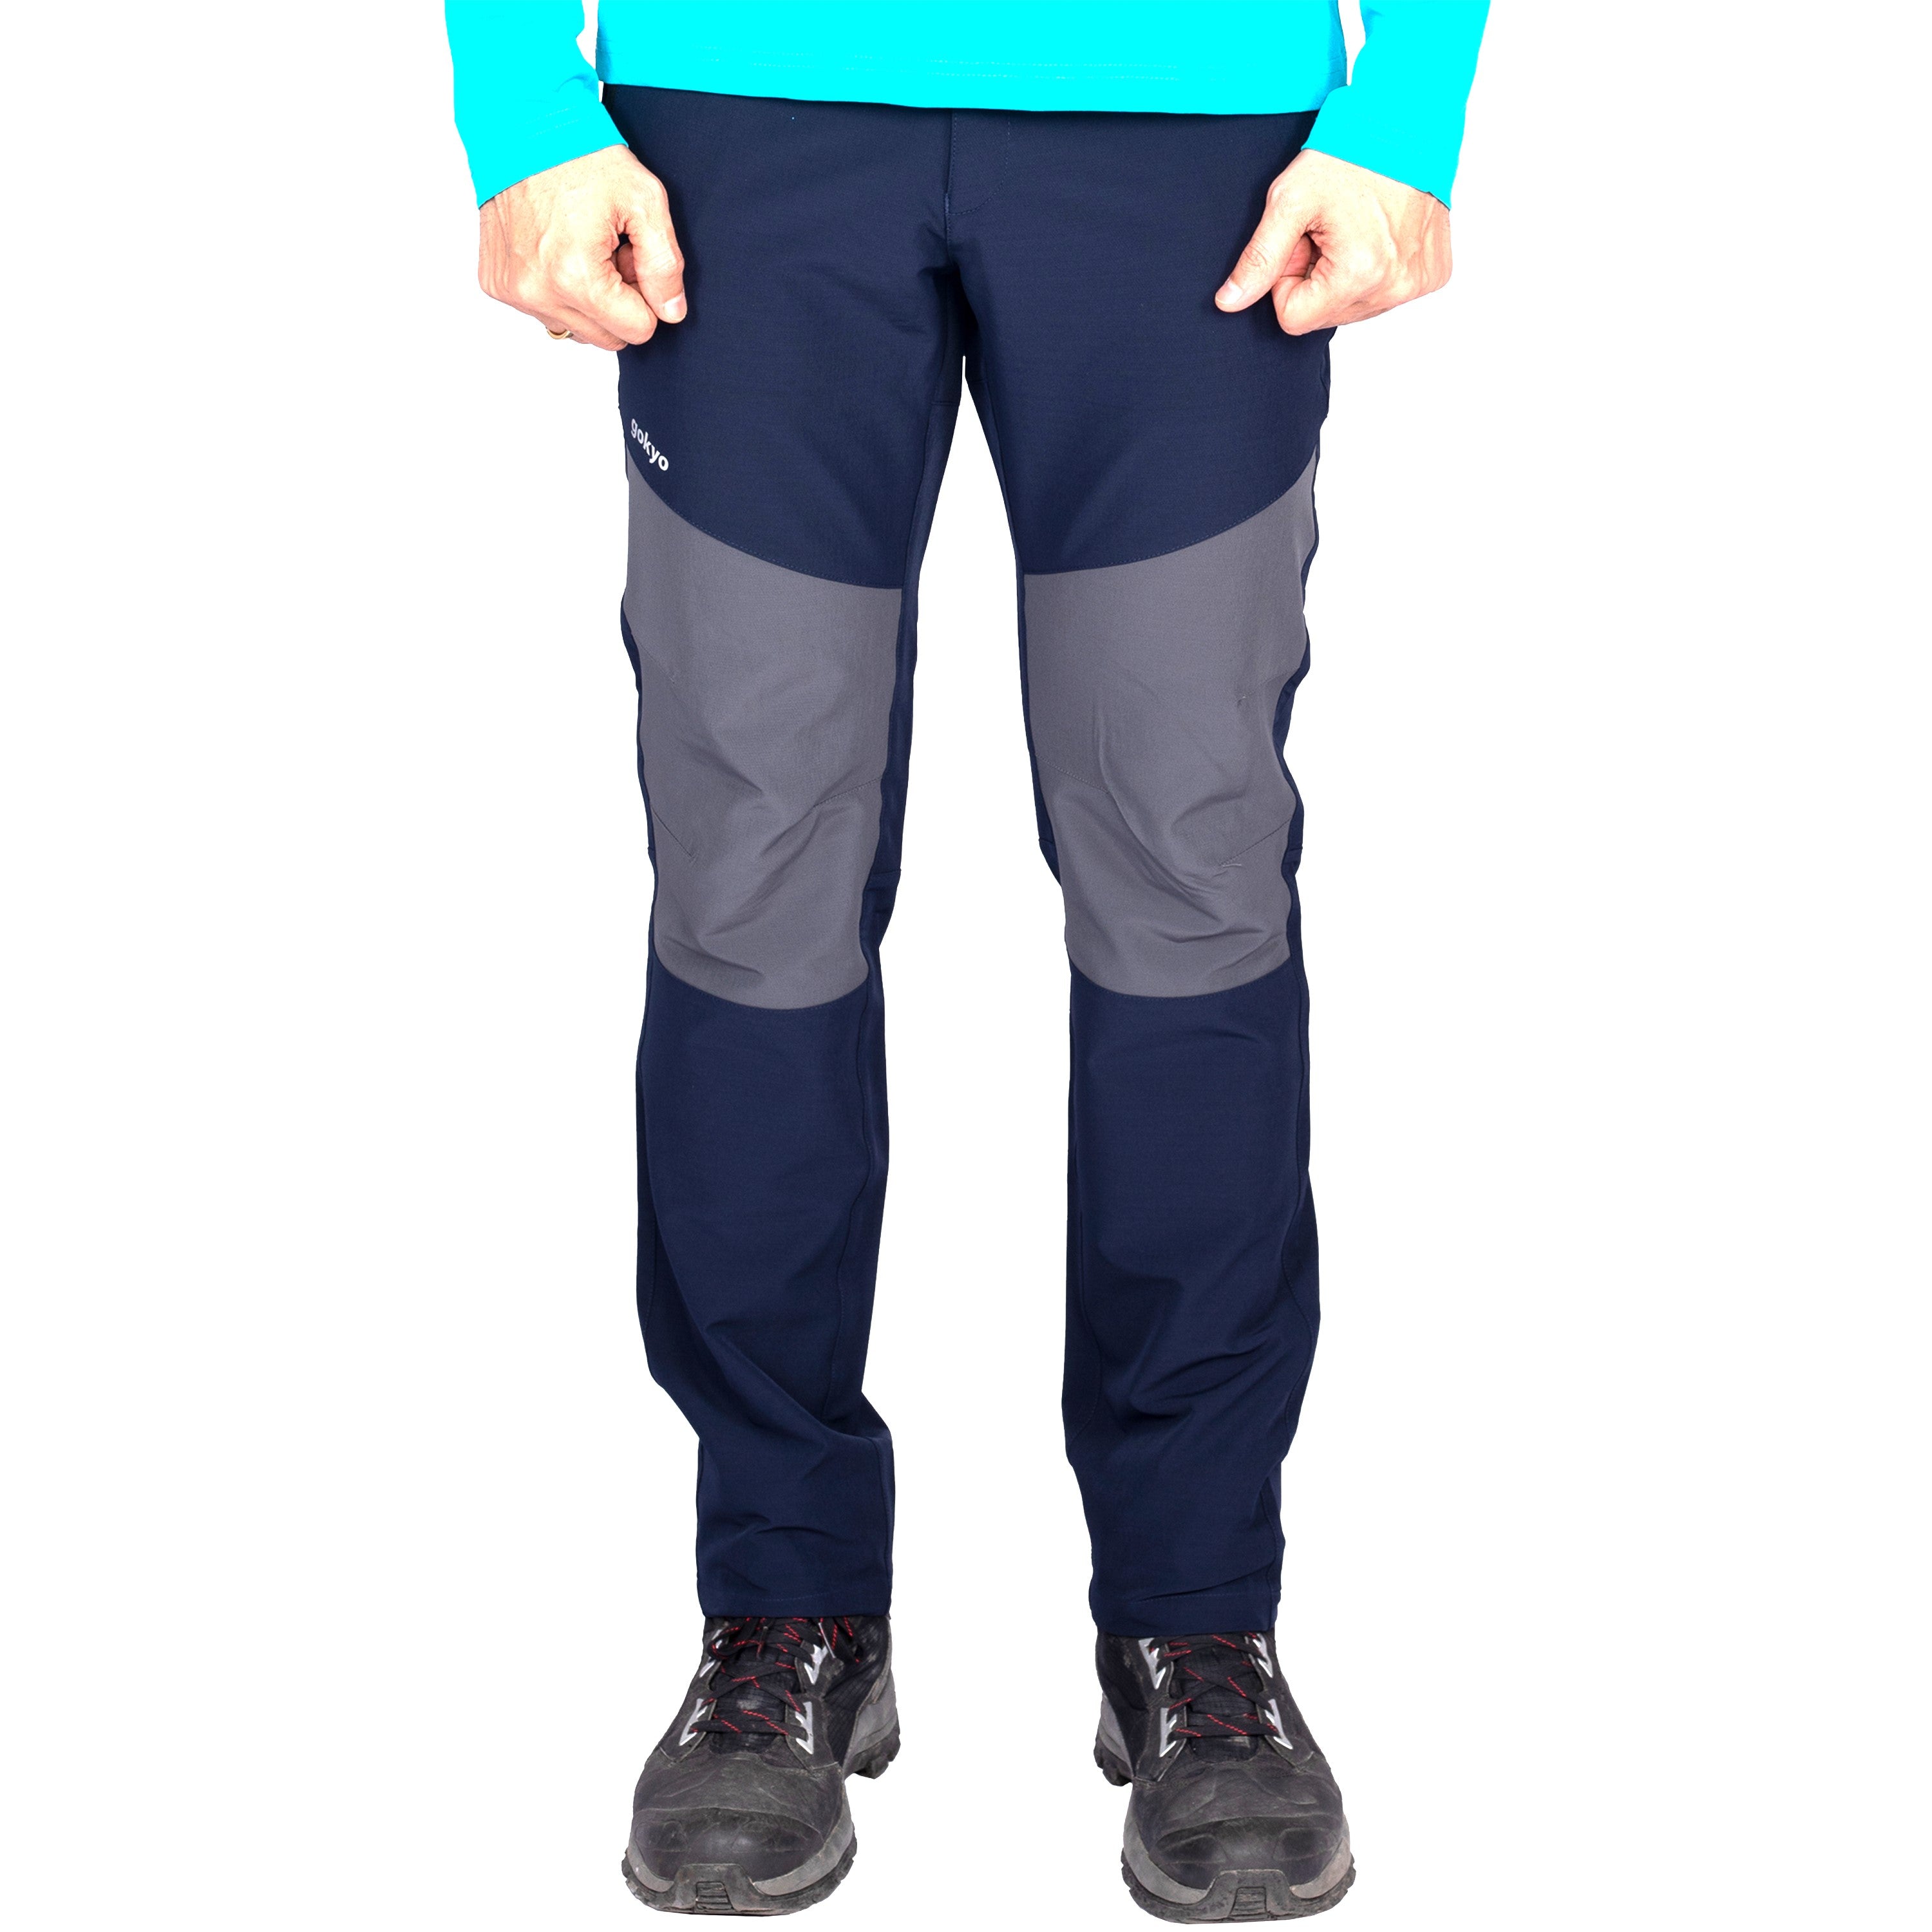 Buy Gokyo Kaza All Weather Trekking Pants Navy | Trekking & Hiking Pants at Gokyo Outdoor Clothing & Gear